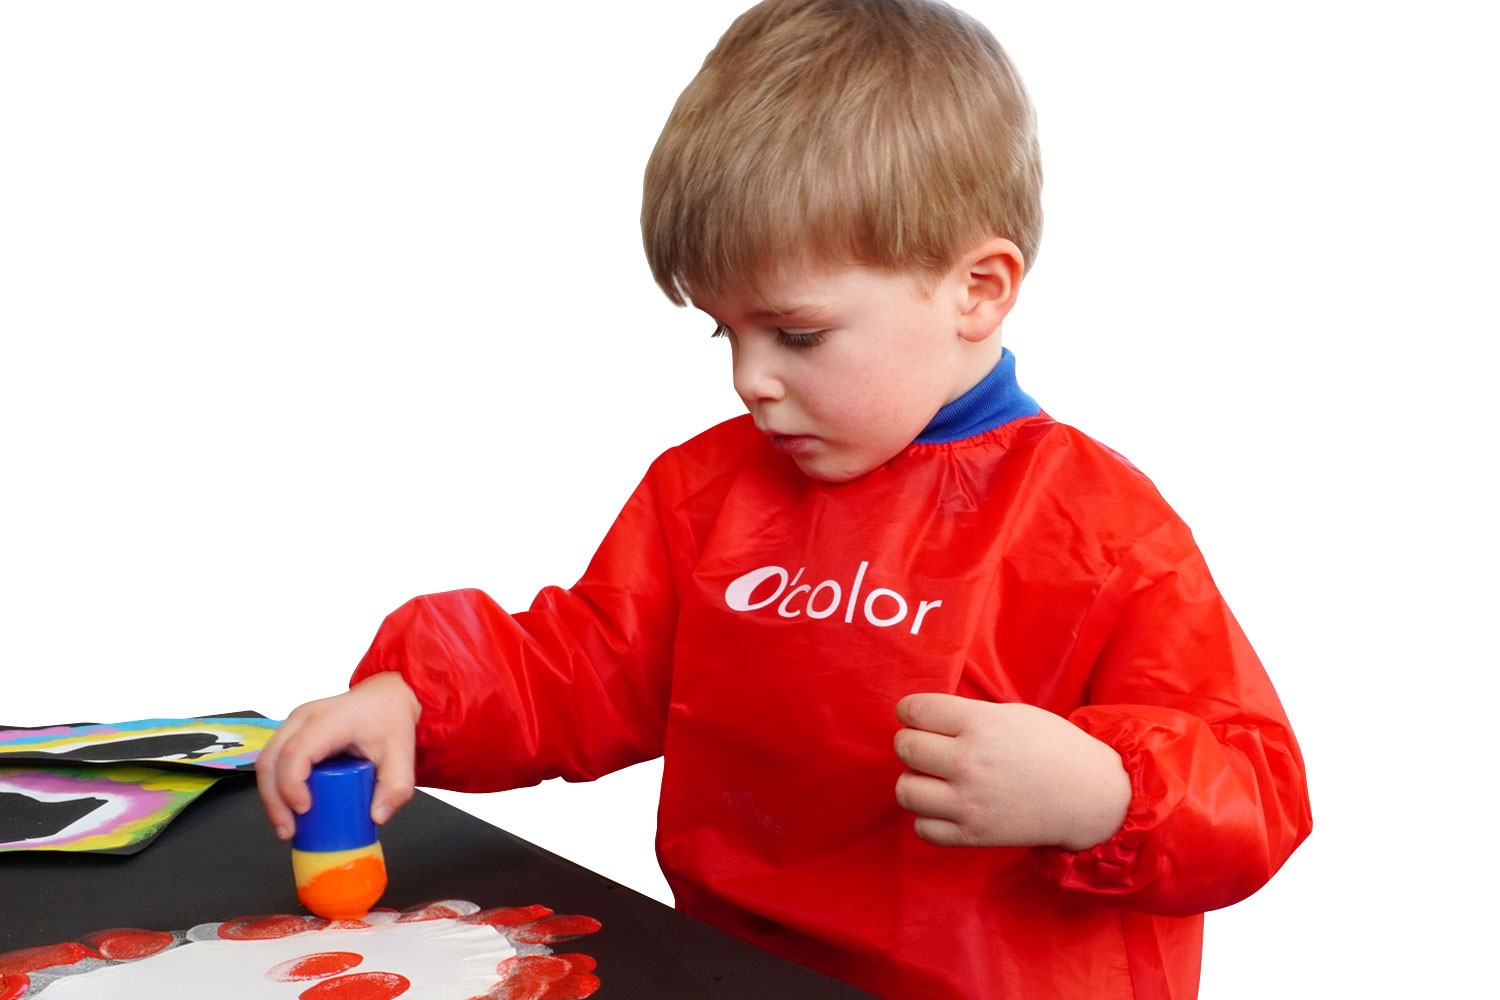 Tablier de peinture imperméable pour enfants de 3 à 7 ans avec 3